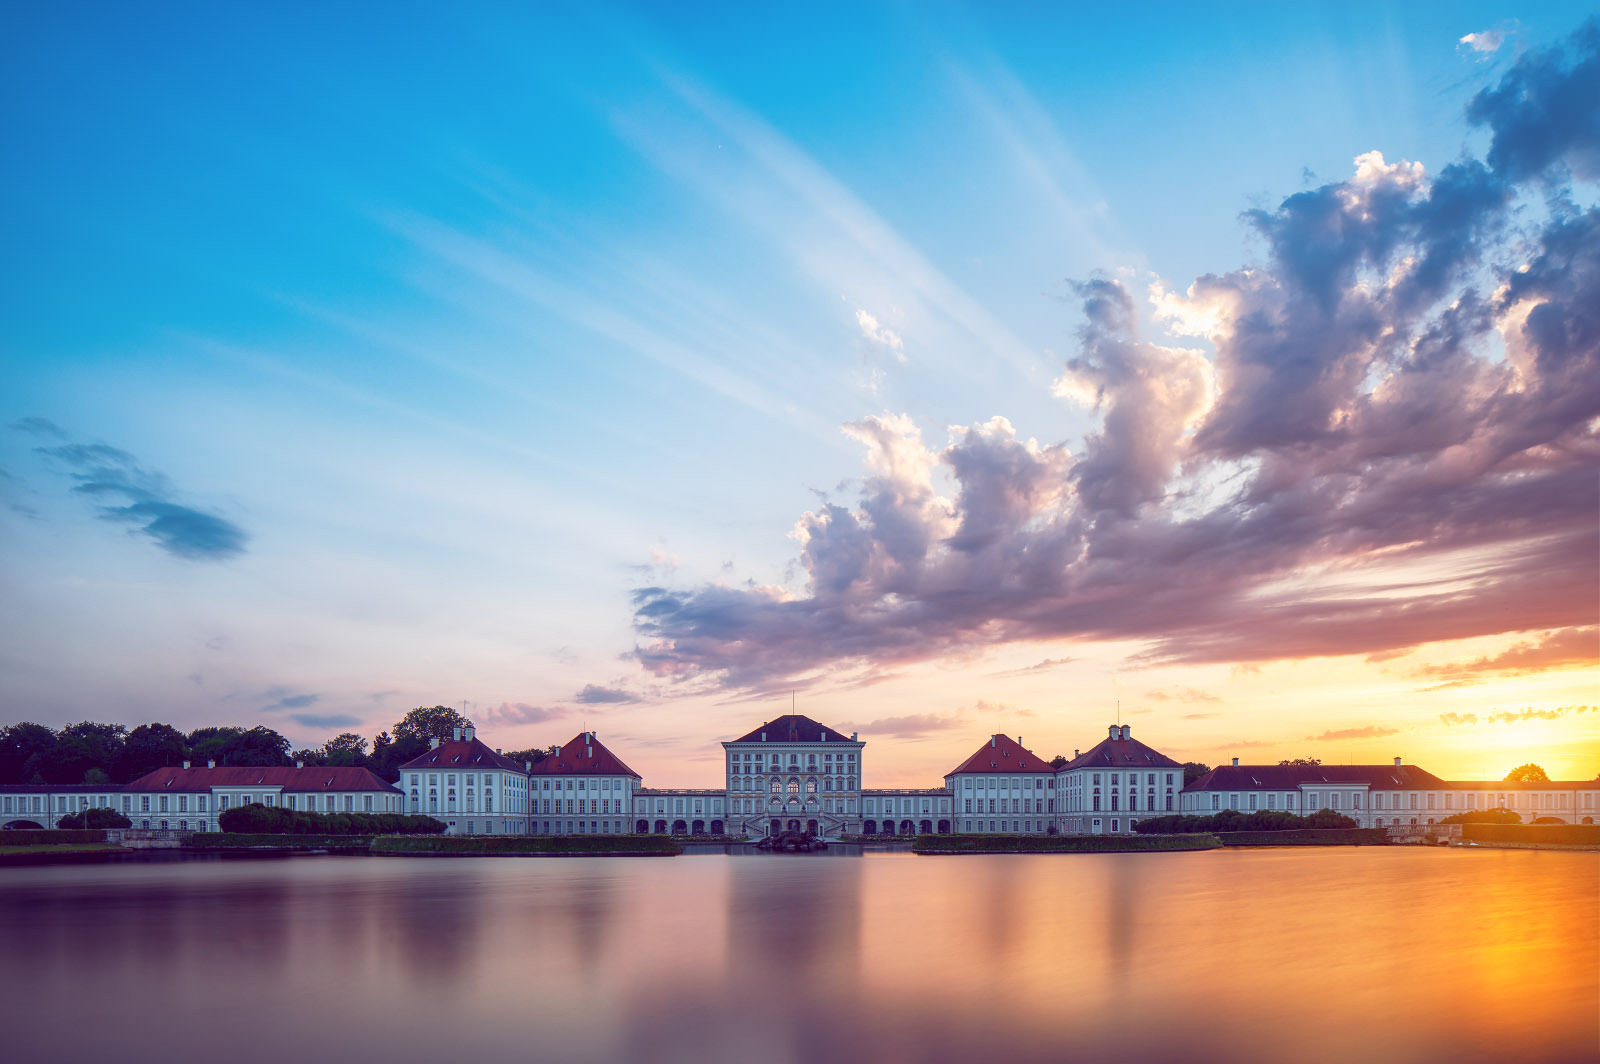 Das Nymphenburger Schloss bei Sonnenuntergang